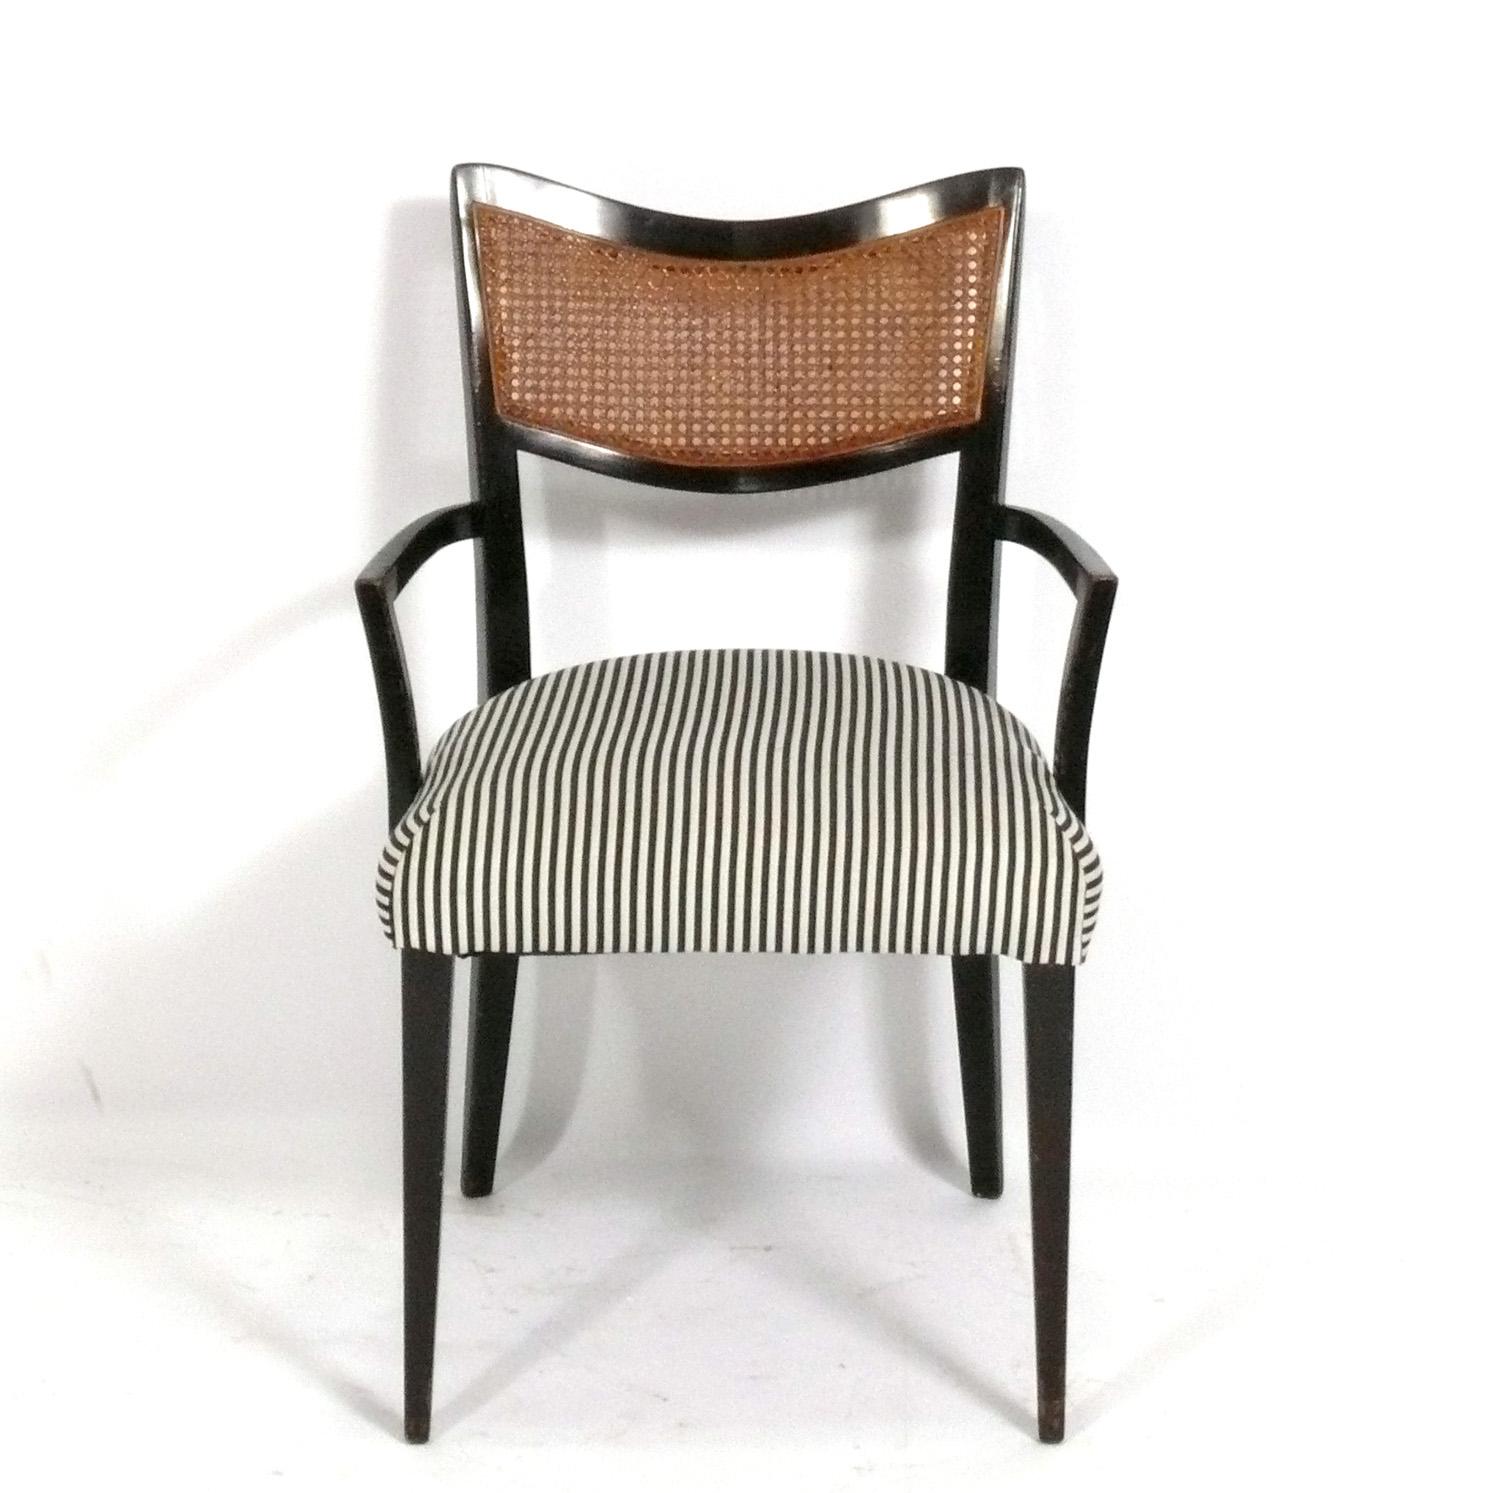 Ensemble de six chaises de salle à manger curvilignes, conçues par Harvey Probber, américain, vers les années 1960. Ces chaises sont actuellement en cours de remise à neuf et de retapissage. Ils peuvent être complétés dans la couleur de finition de